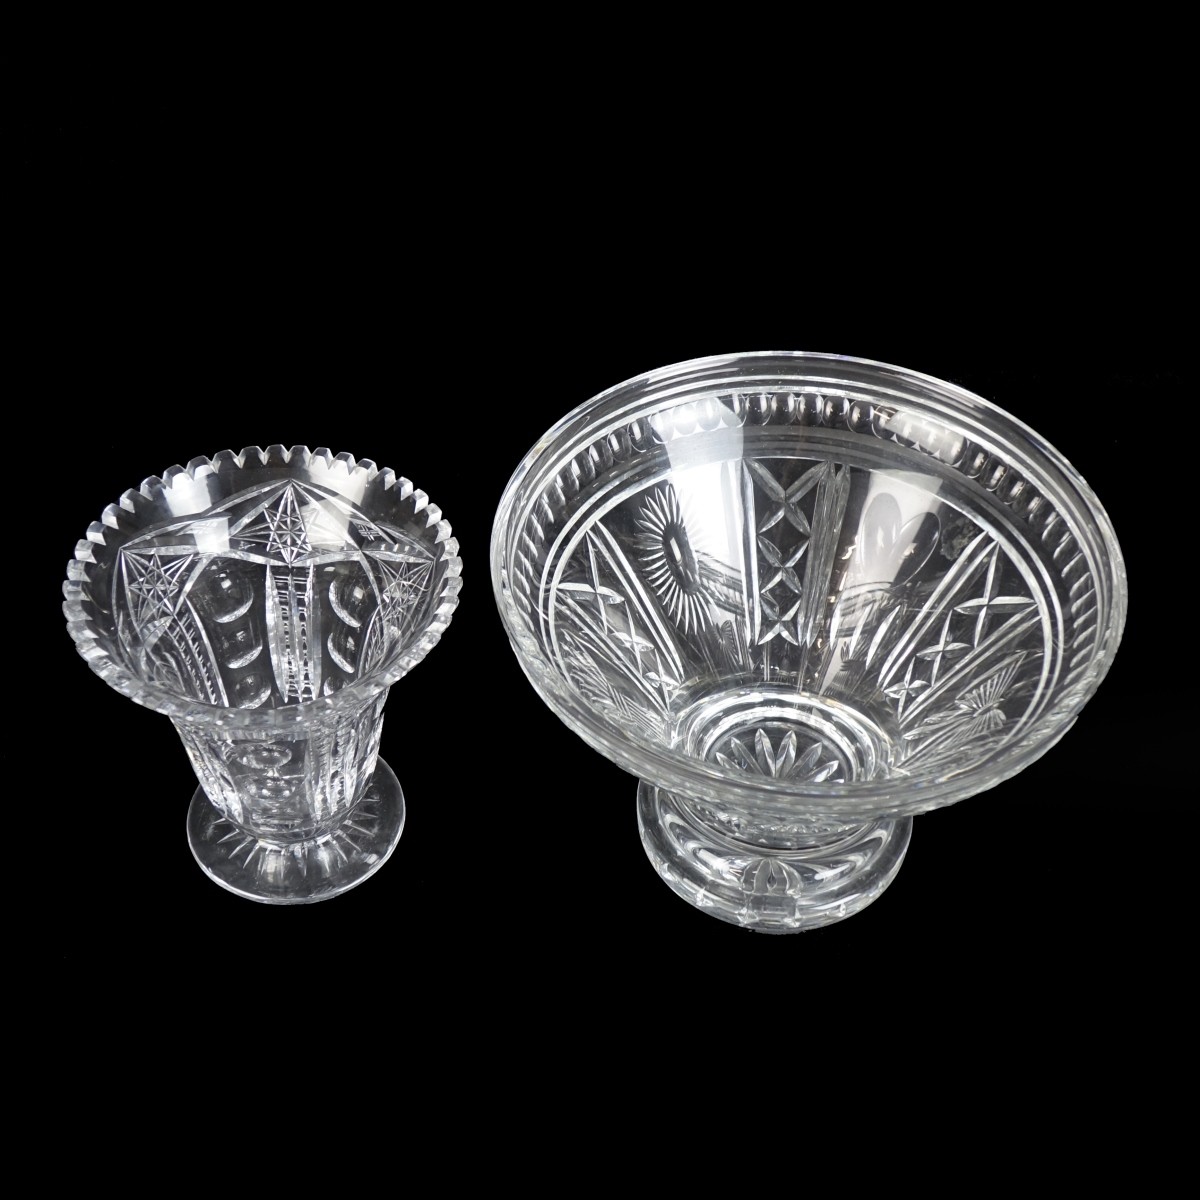 Two (2) Vintage Cut Crystal Tableware